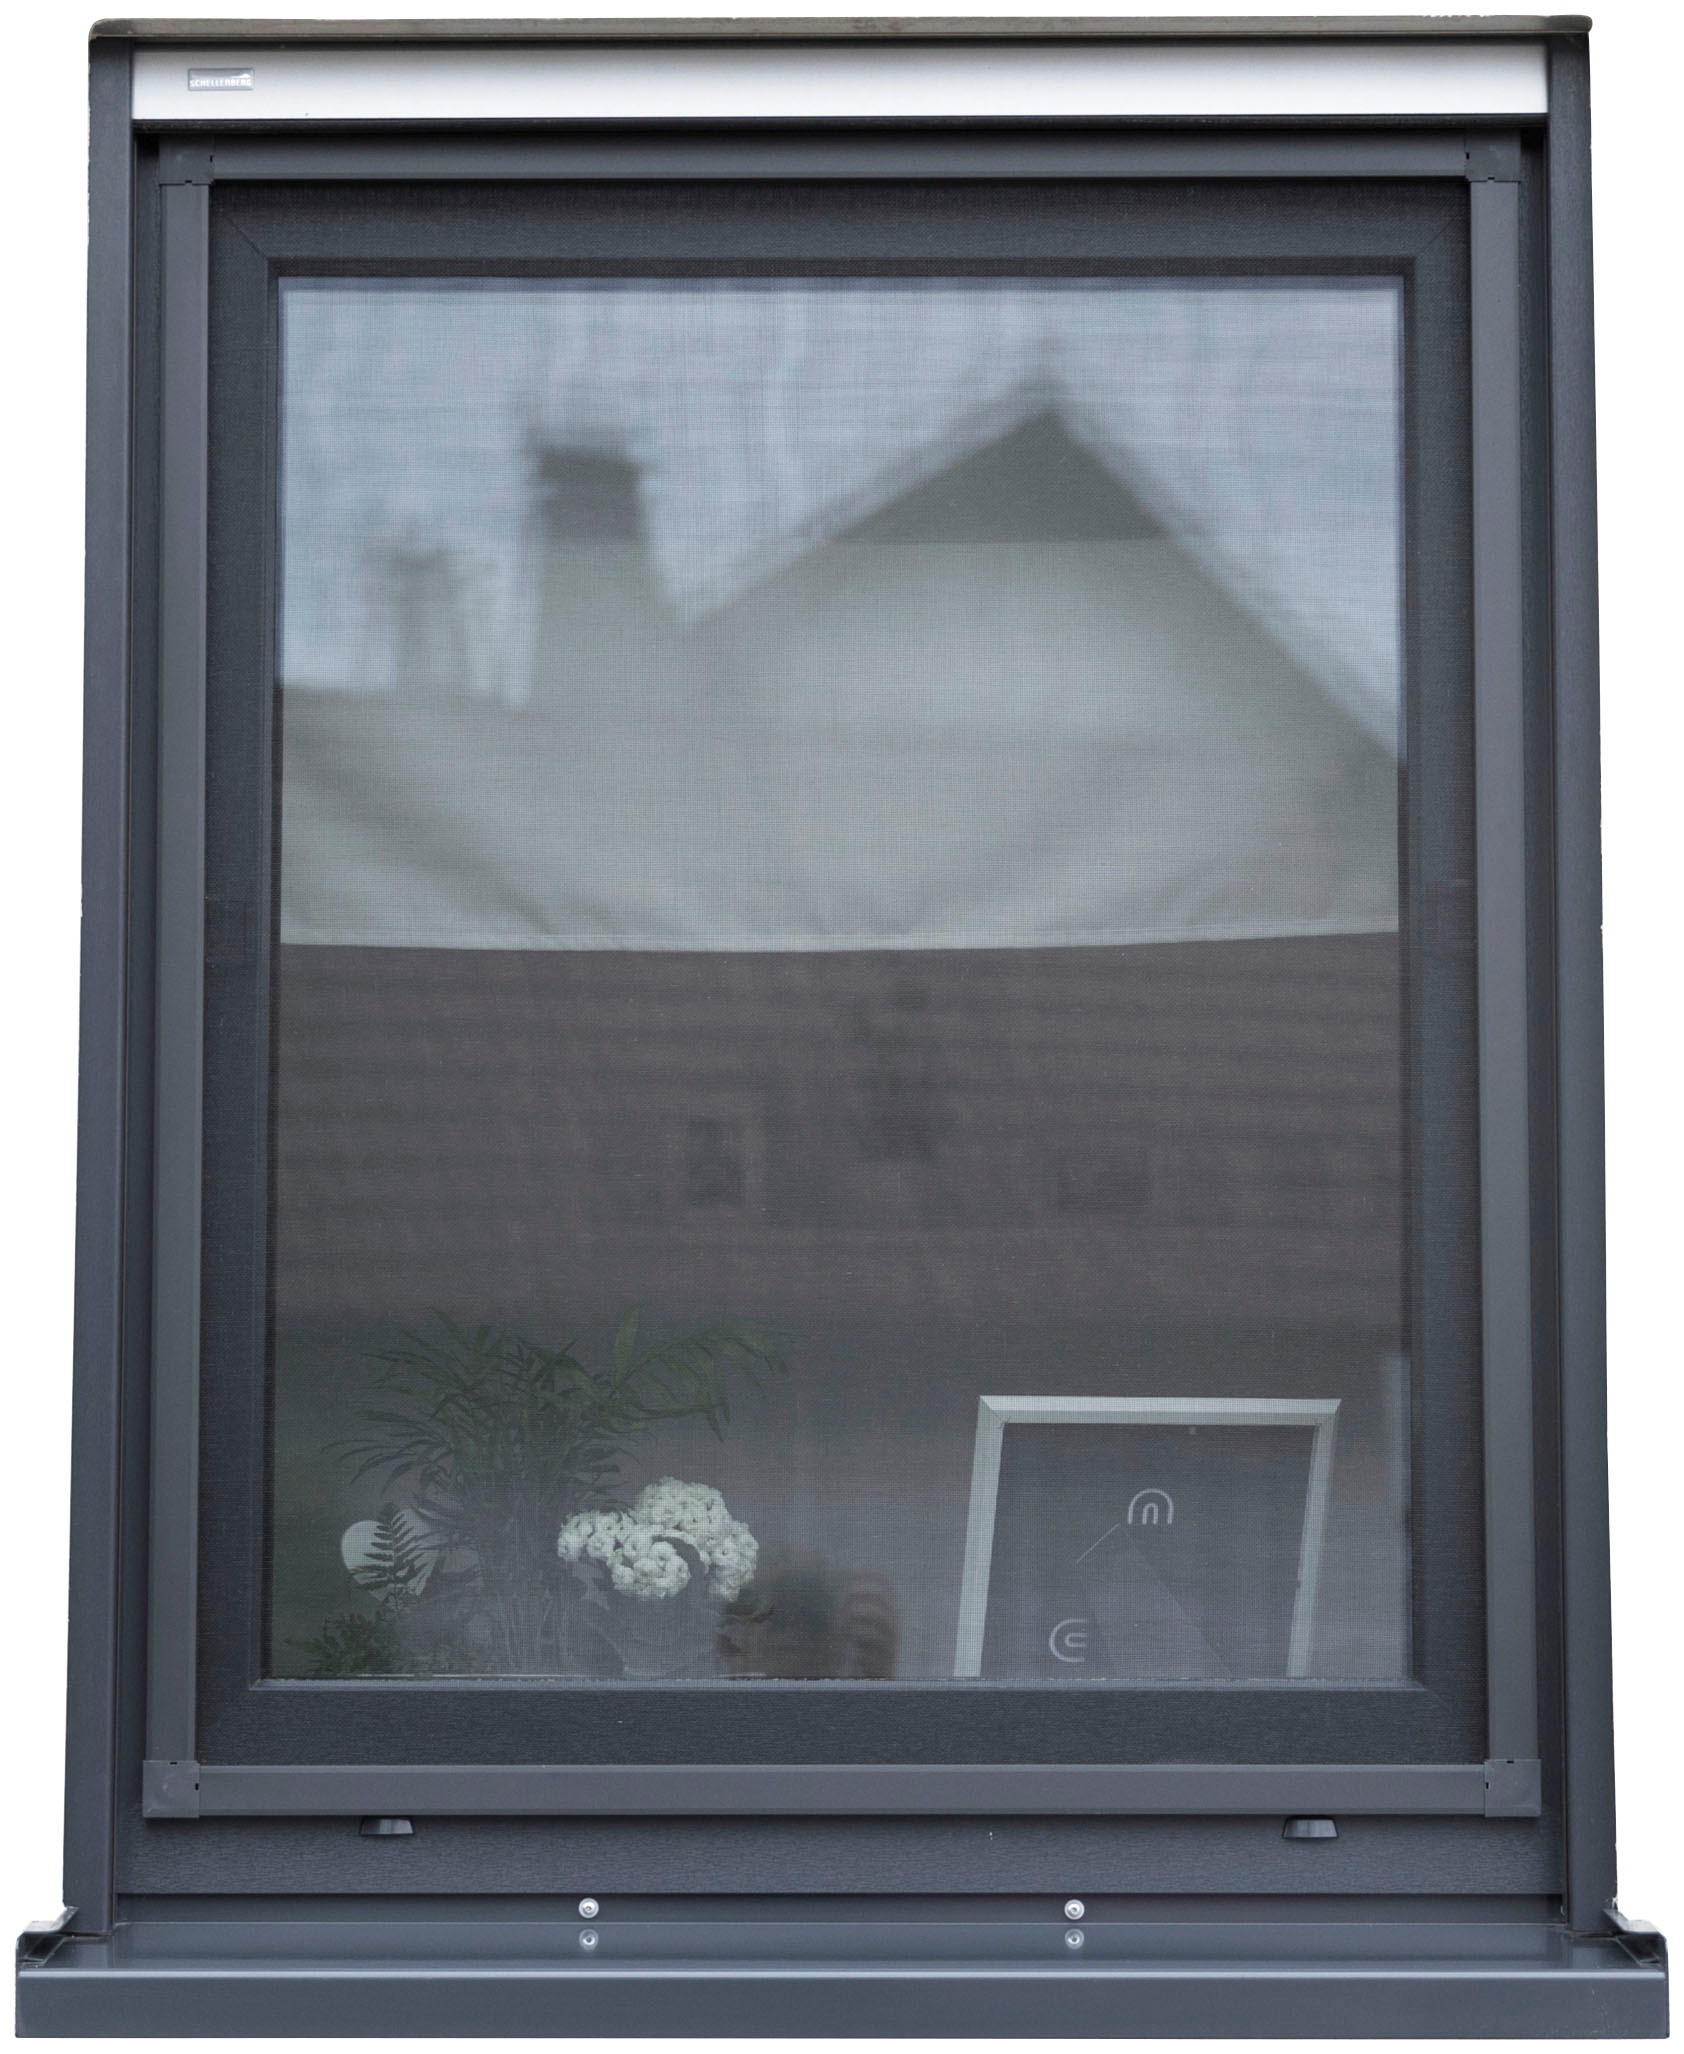 SCHELLENBERG Insektenschutz-Fensterrahmen »Fliegengitter Fenster Premium«, mit Rahmen aus Aluminium, 140 x 150 cm, anthrazit, 70043